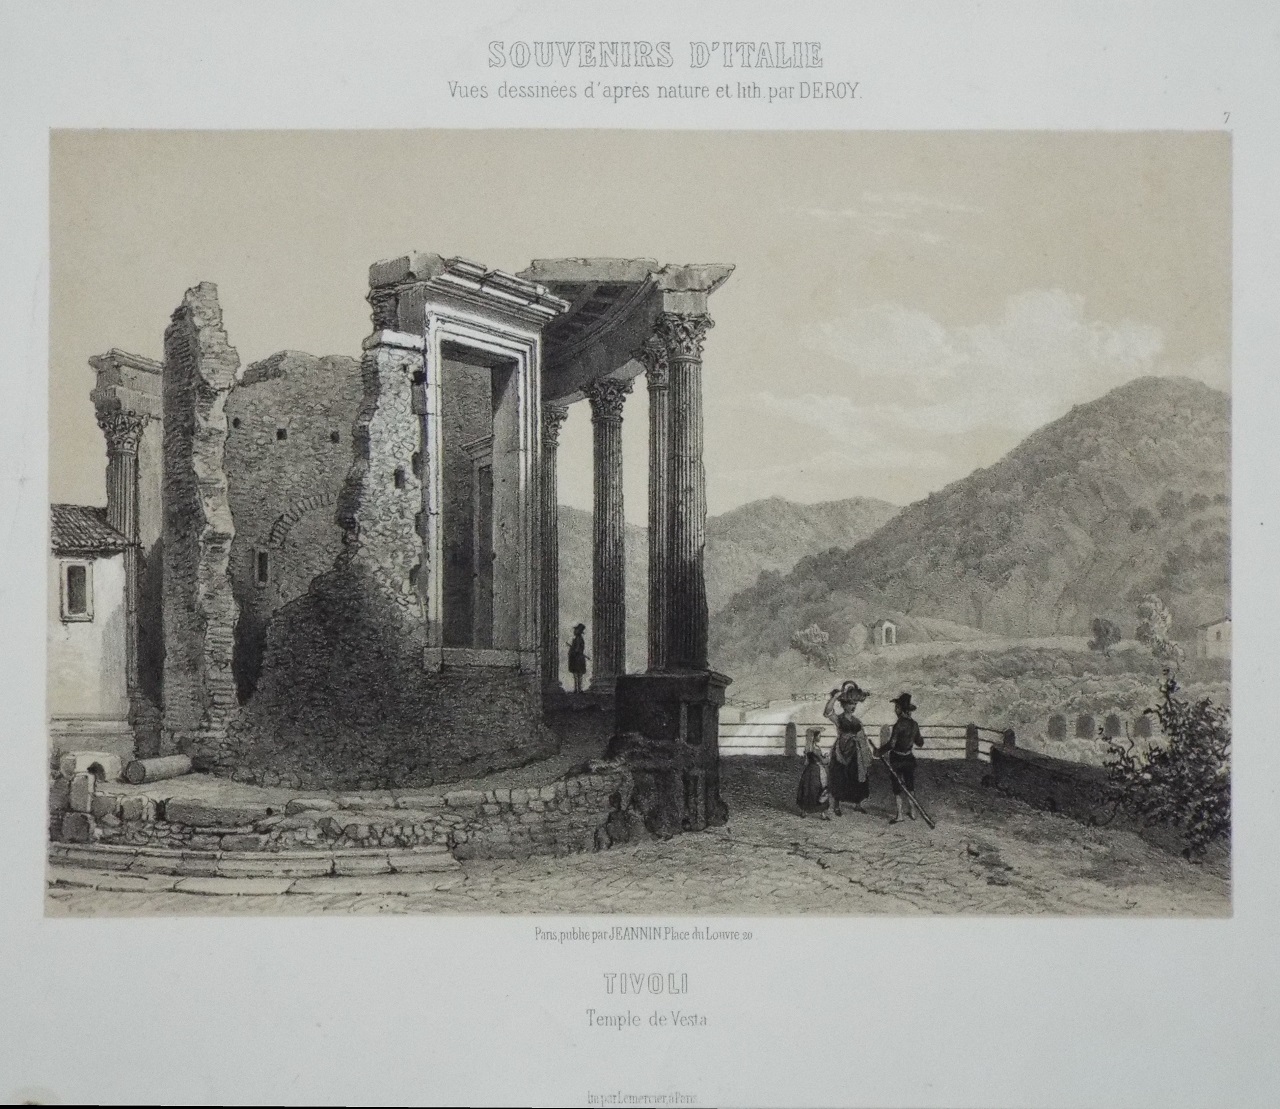 Lithograph - Tivoli Temple de Vesta. Souvenirs d'Italie Vues dessinees d'apres nature et lith. par Deroy.